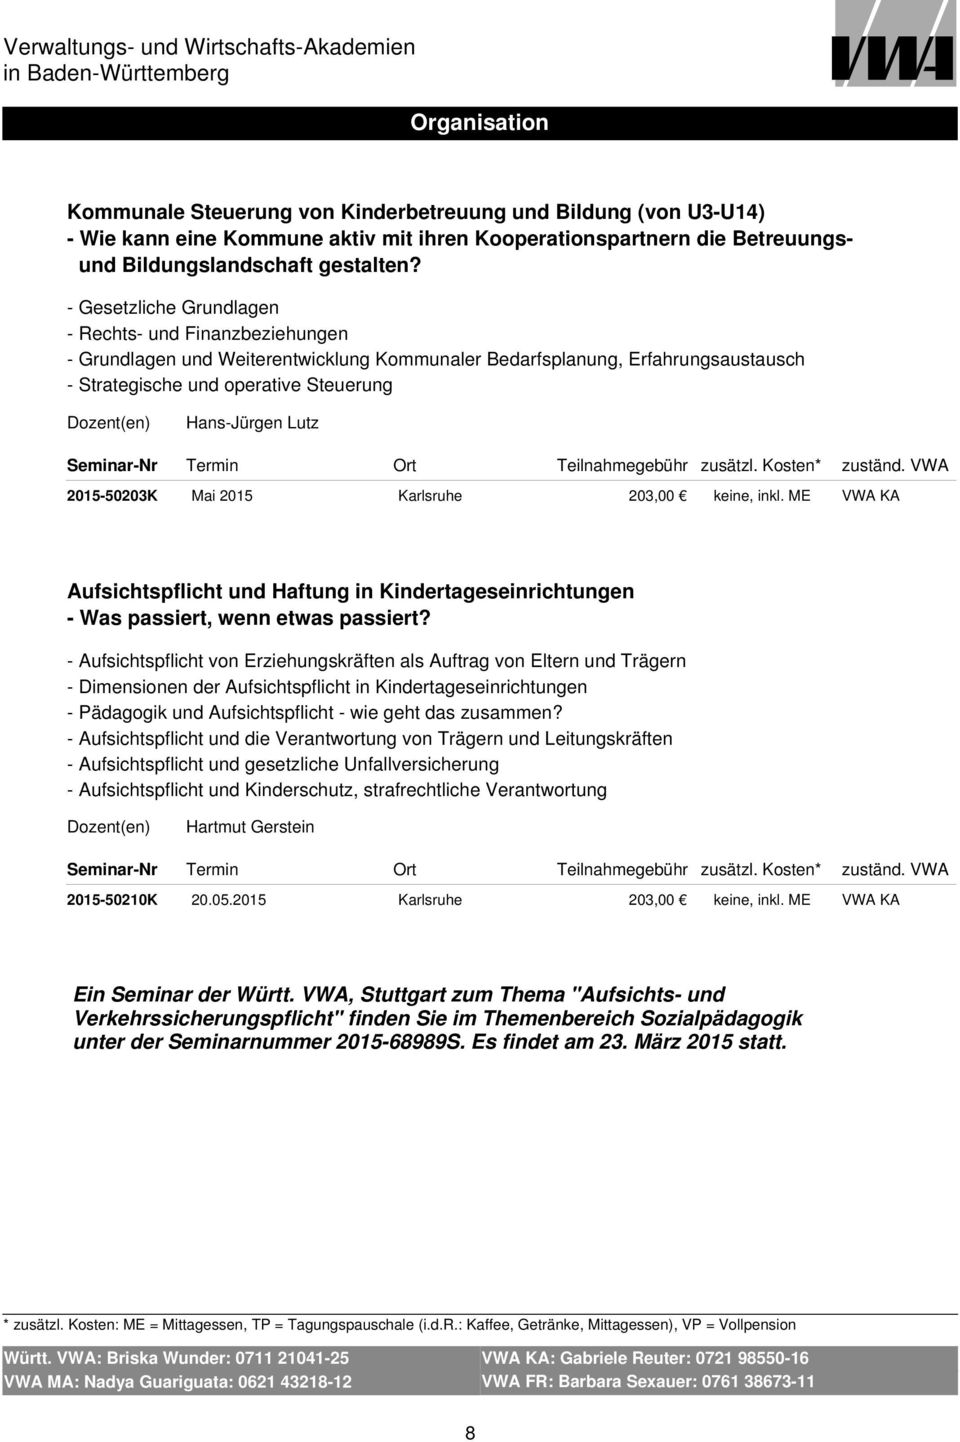 2015-50203K Mai 2015 Karlsruhe 203,00 keine, inkl. ME VWA KA Aufsichtspflicht und Haftung in Kindertageseinrichtungen - Was passiert, wenn etwas passiert?